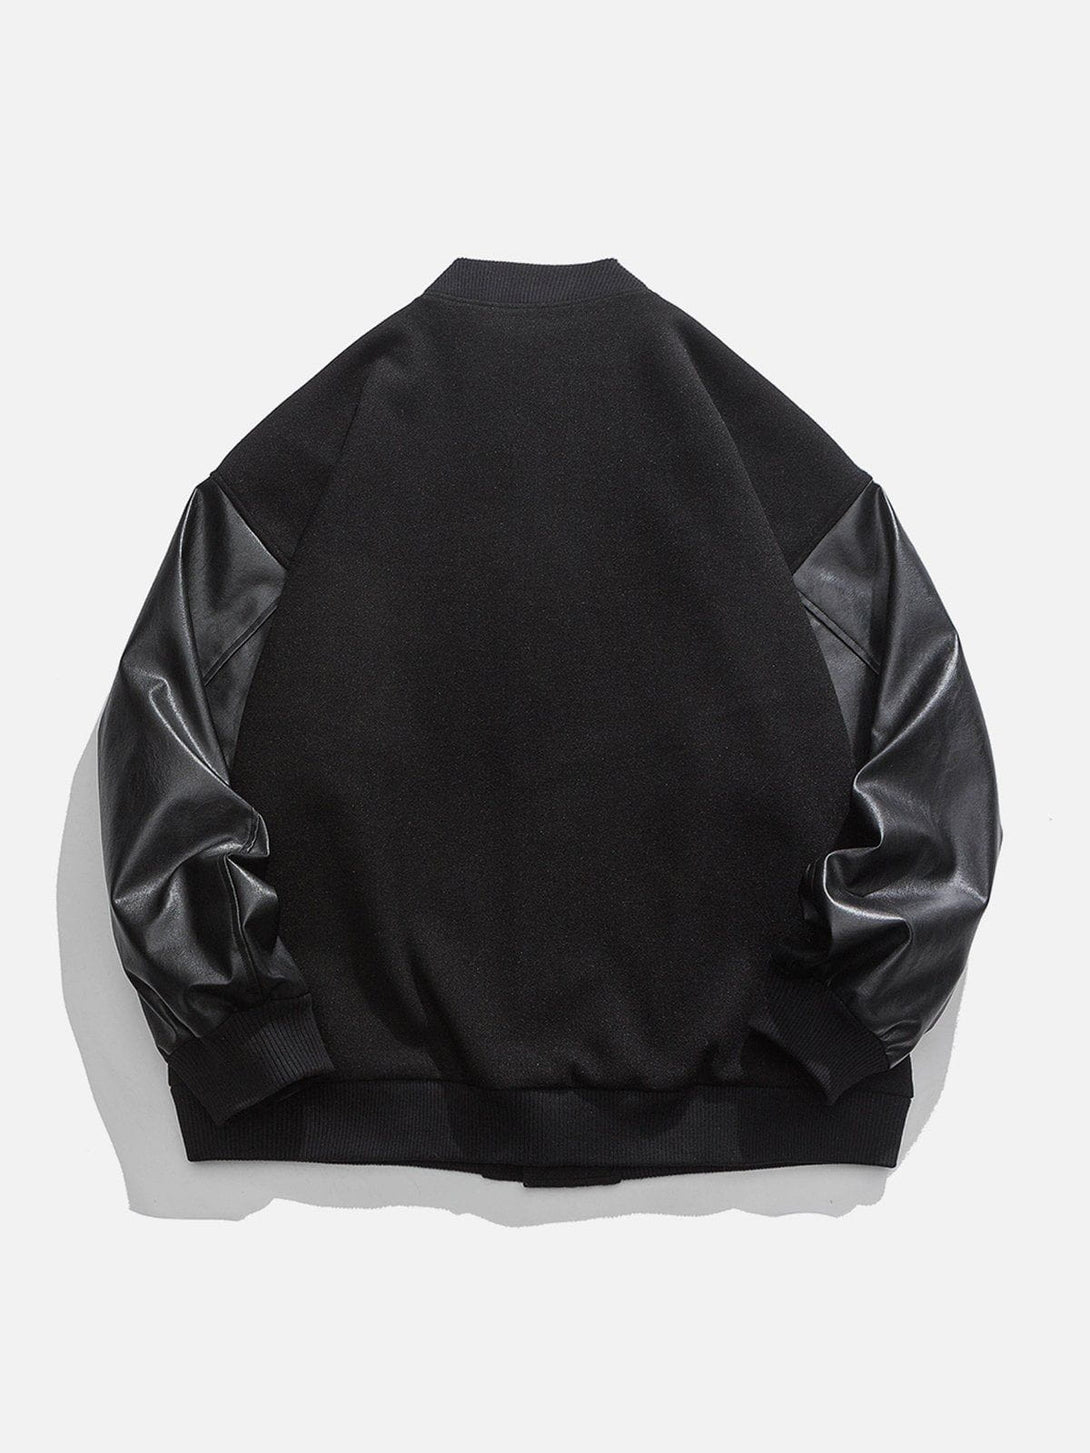 AlanBalen® - Solid Leather Sleeves Varsity Jacket AlanBalen